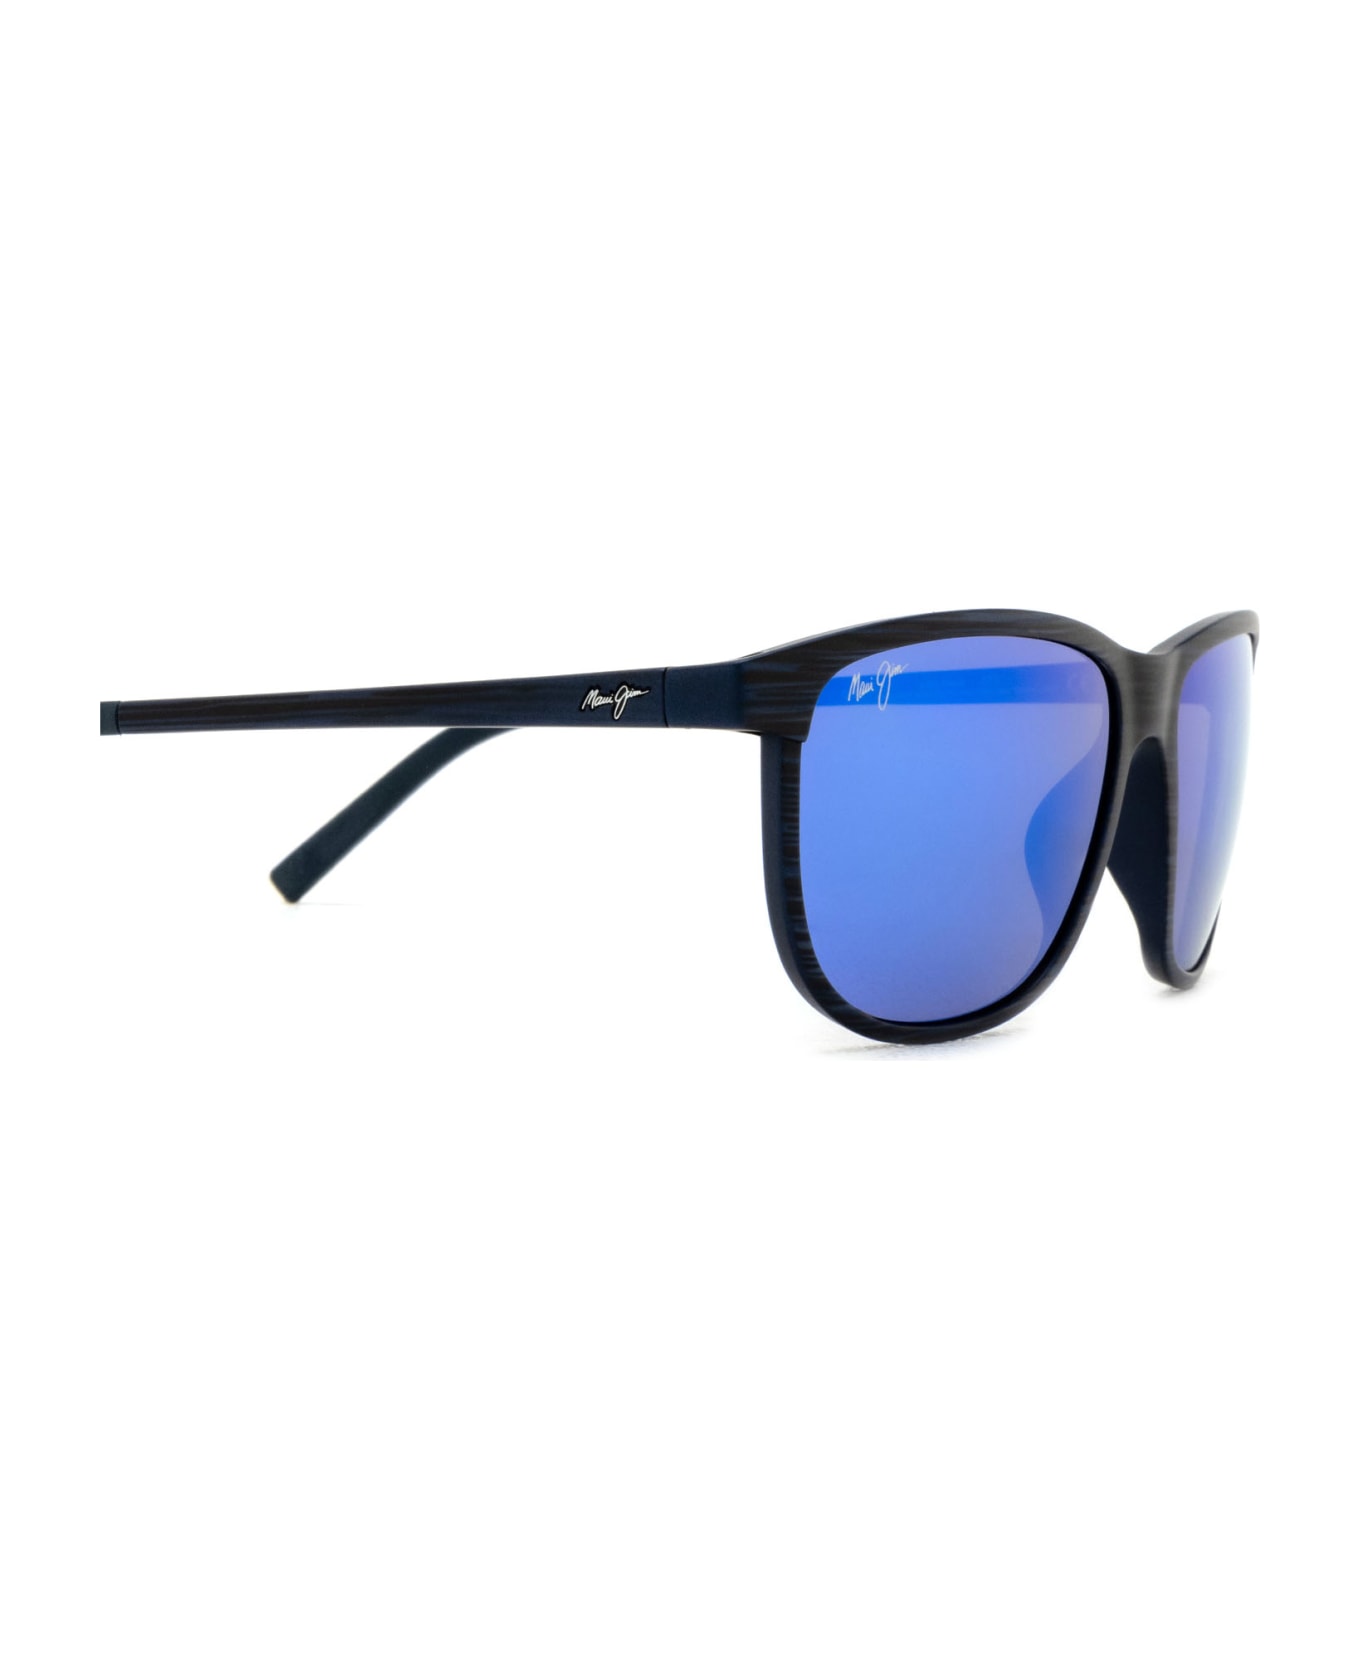 Maui Jim Mj0811s Blue Sunglasses - Blue